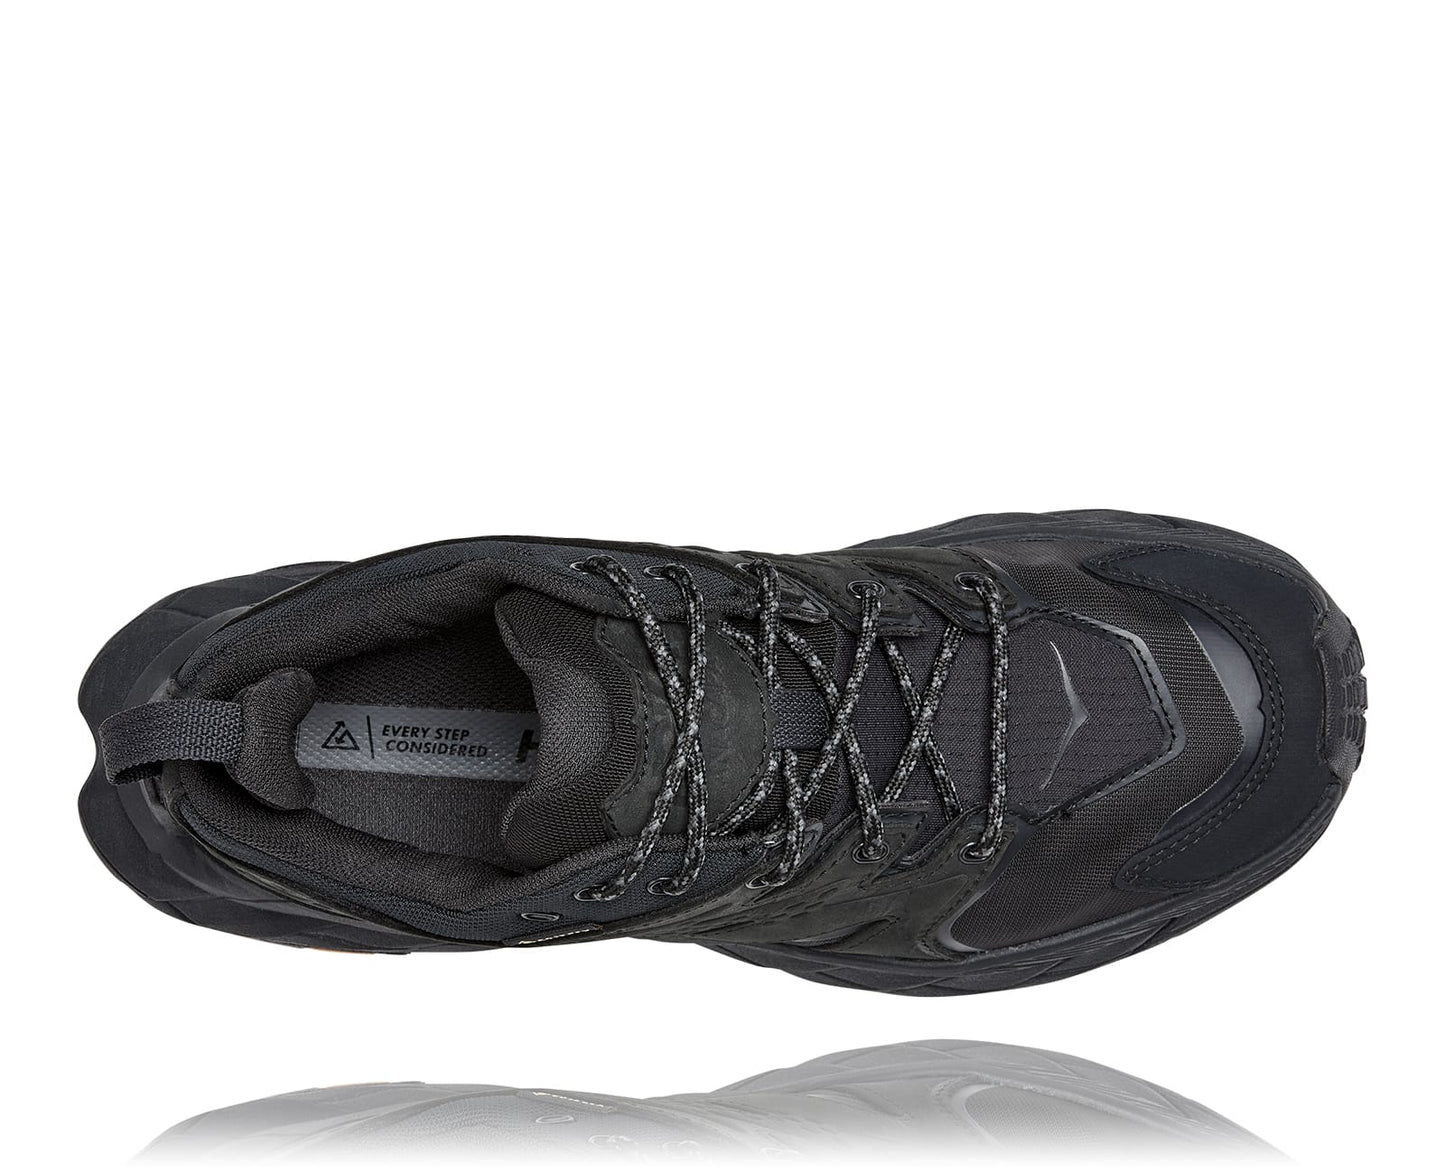 Anacapa M GTX low, svart vattentät sko perfekt för vandring i alla underlag och väder. Hos Hoka specialisterna i Sverige.